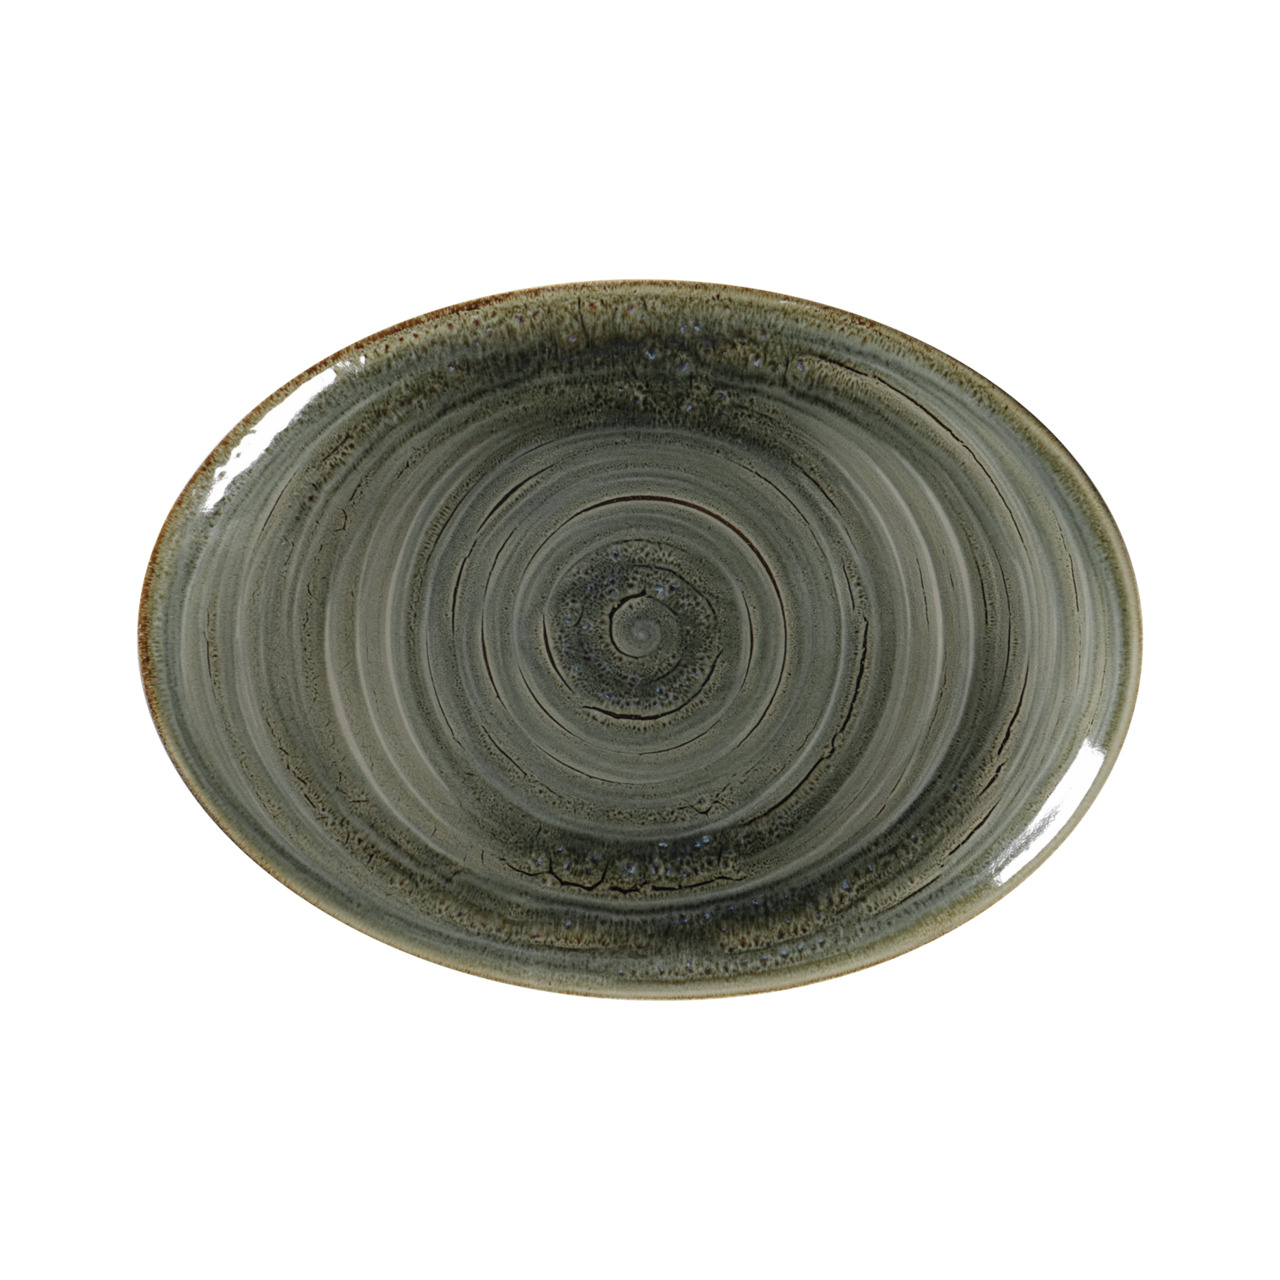 Spot, Platte oval 320 x 230 mm peridot green